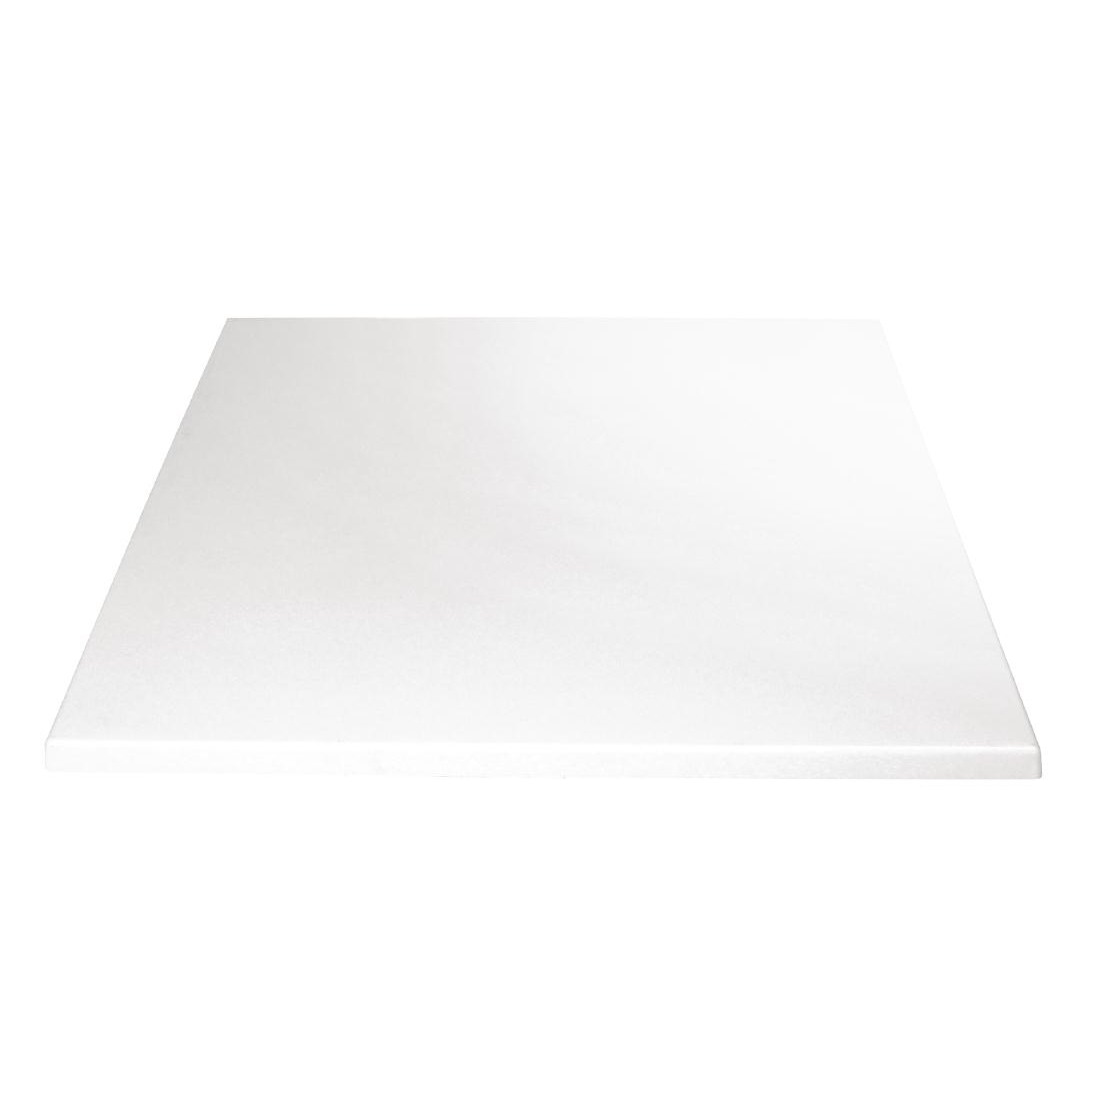 Bolero Pre-drilled Square Table Top White 700mm